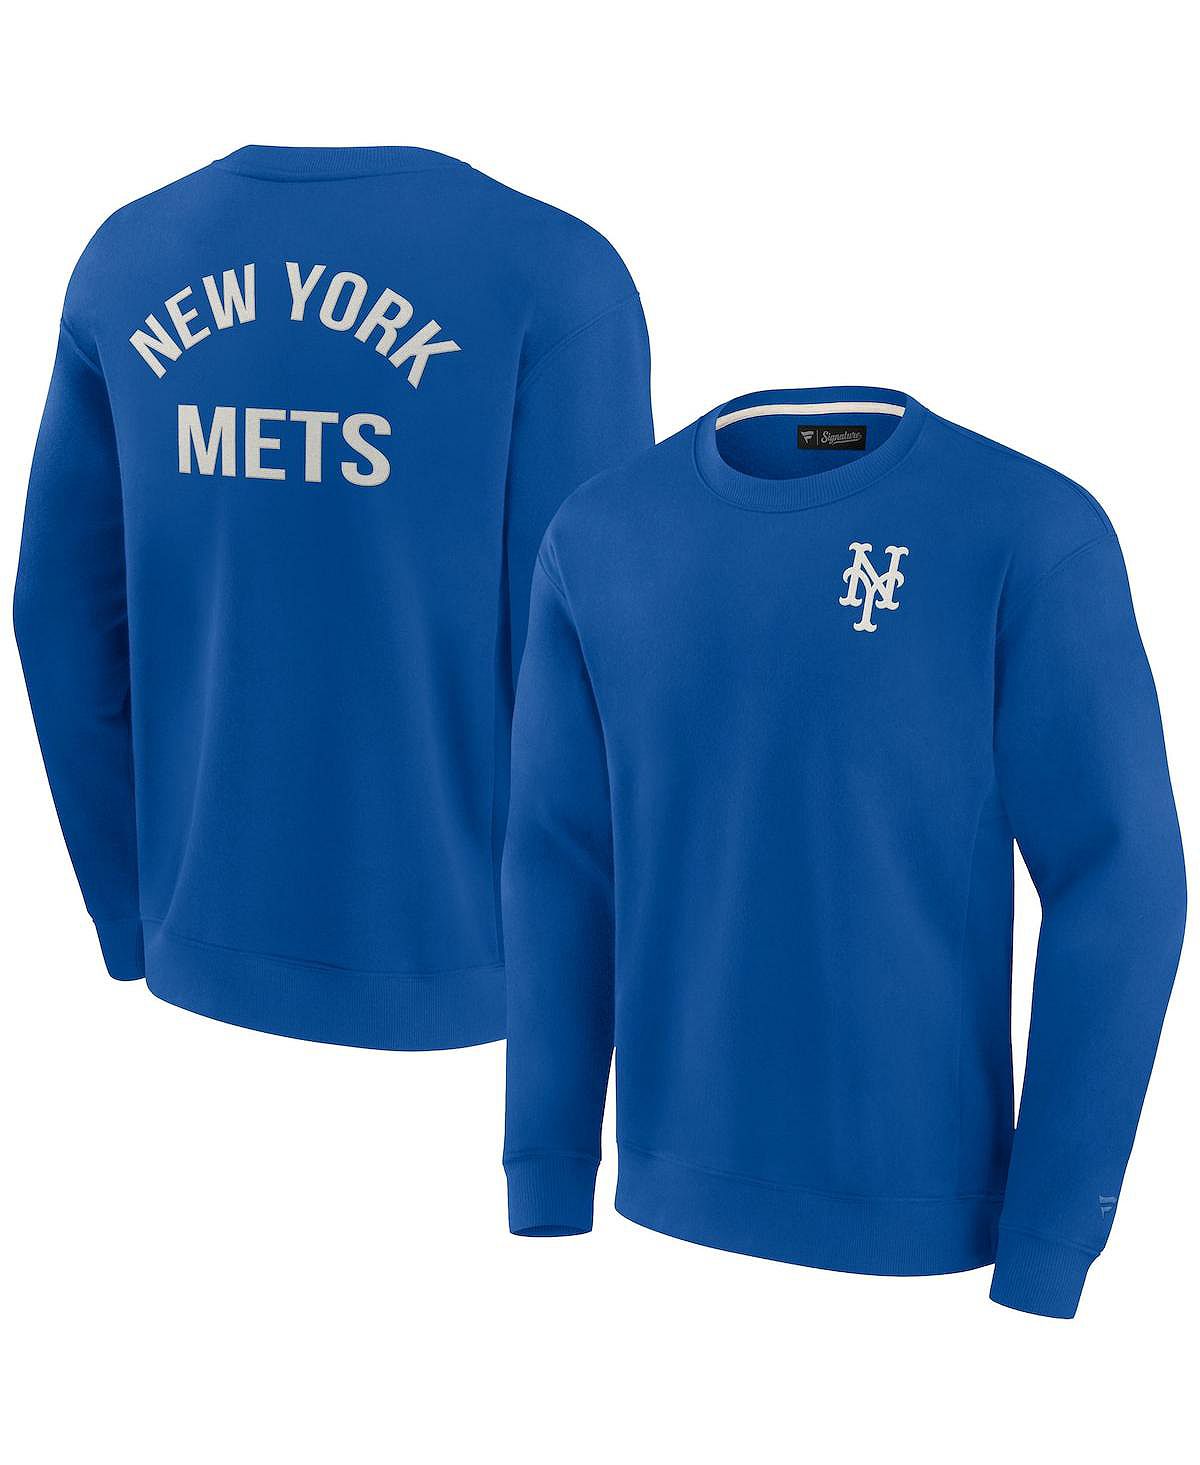 Супермягкий пуловер с круглым вырезом Royal New York Mets для мужчин и женщин Fanatics Signature